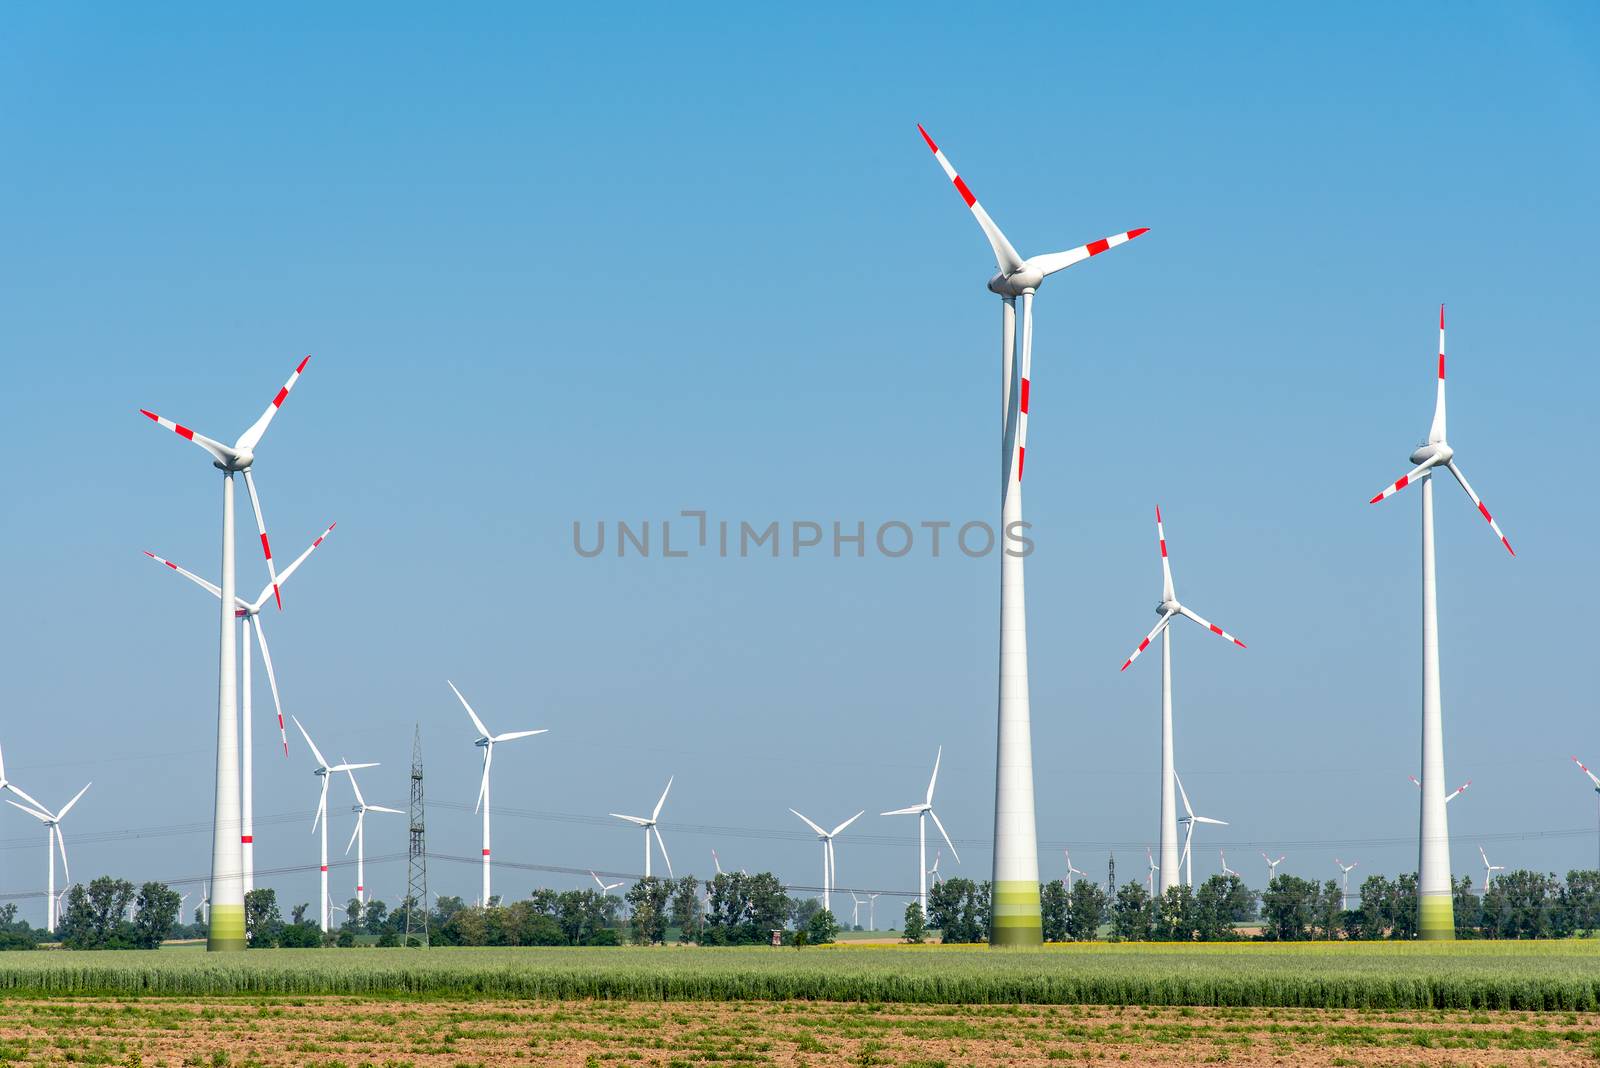 Wind power plants in the fields seen in rural Germany